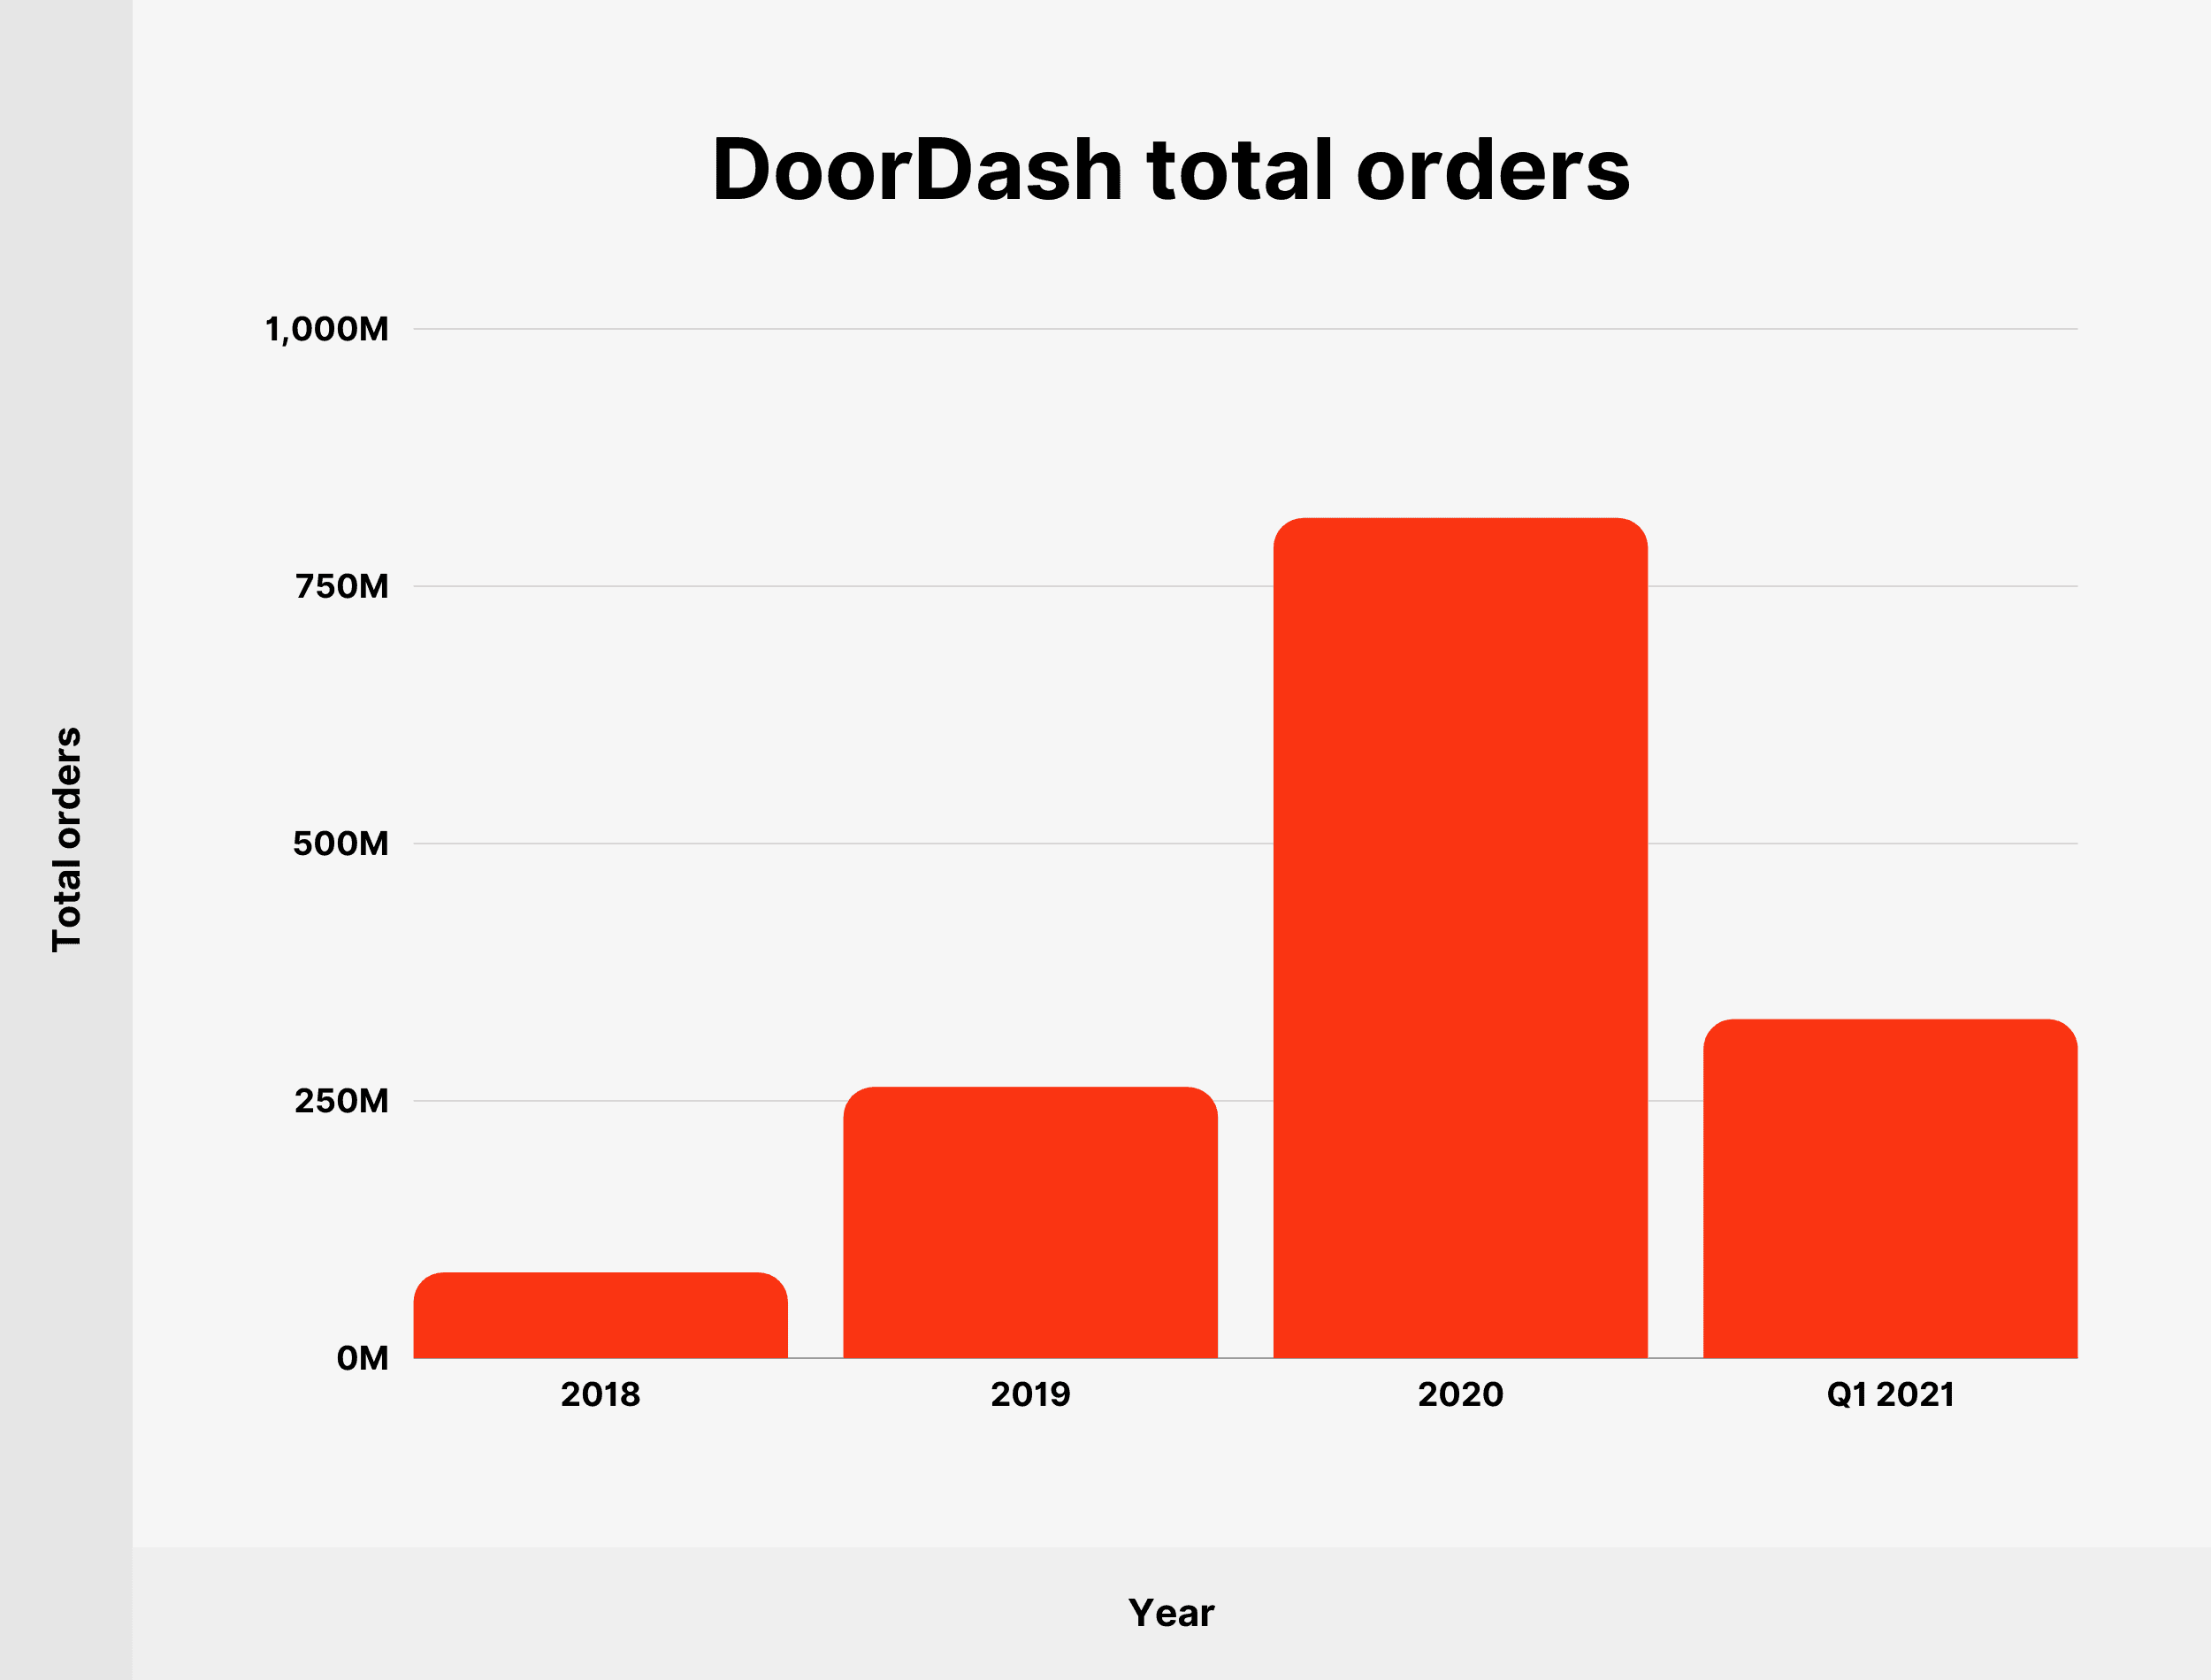 DoorDash total orders